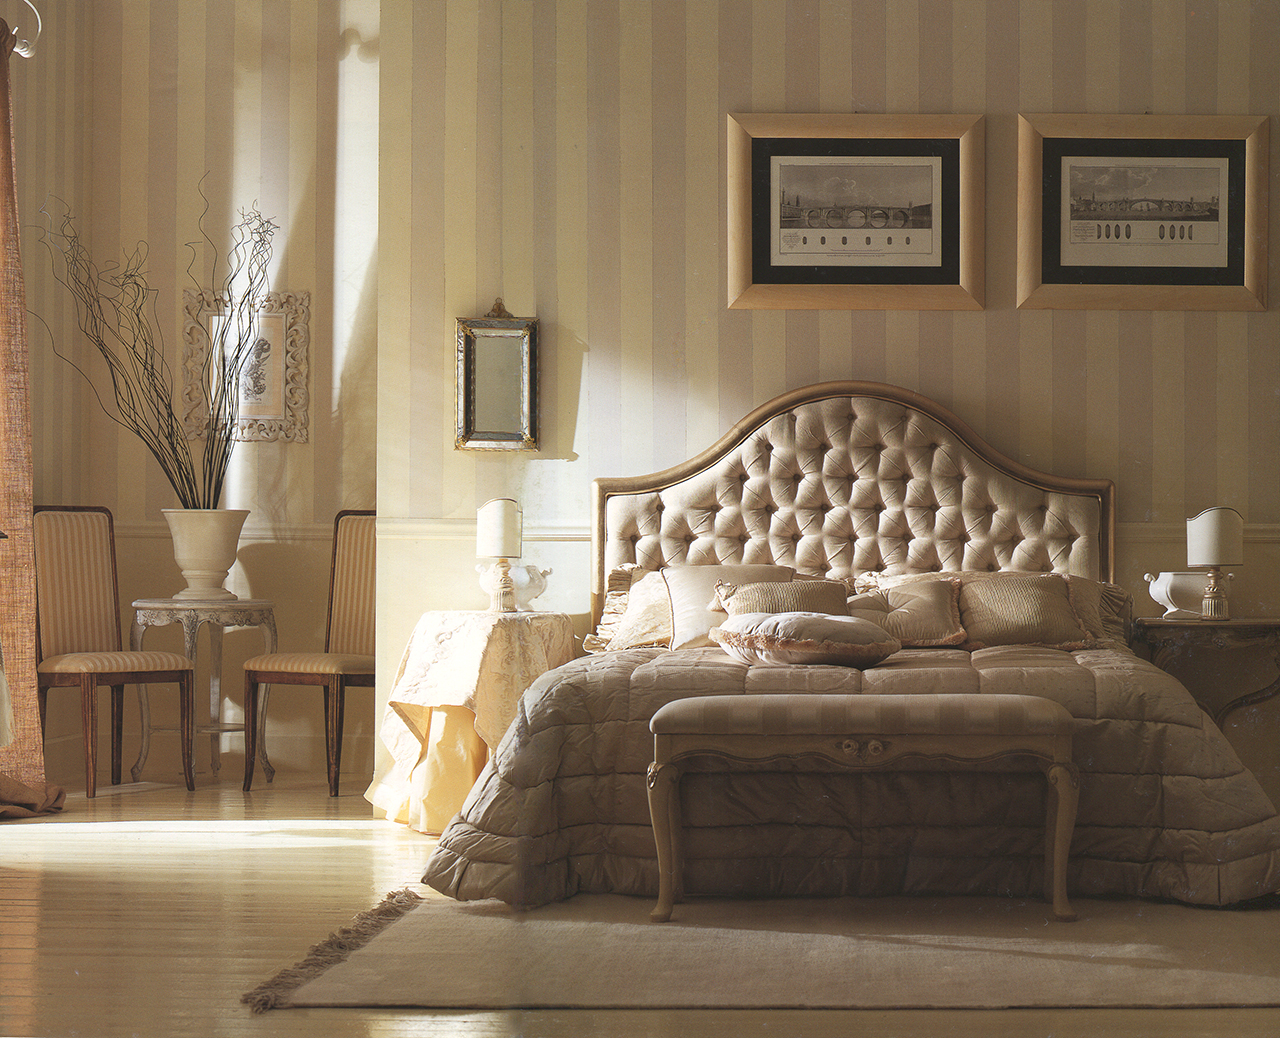 Кремово-коричневая мебель в классическом интерьере спальни